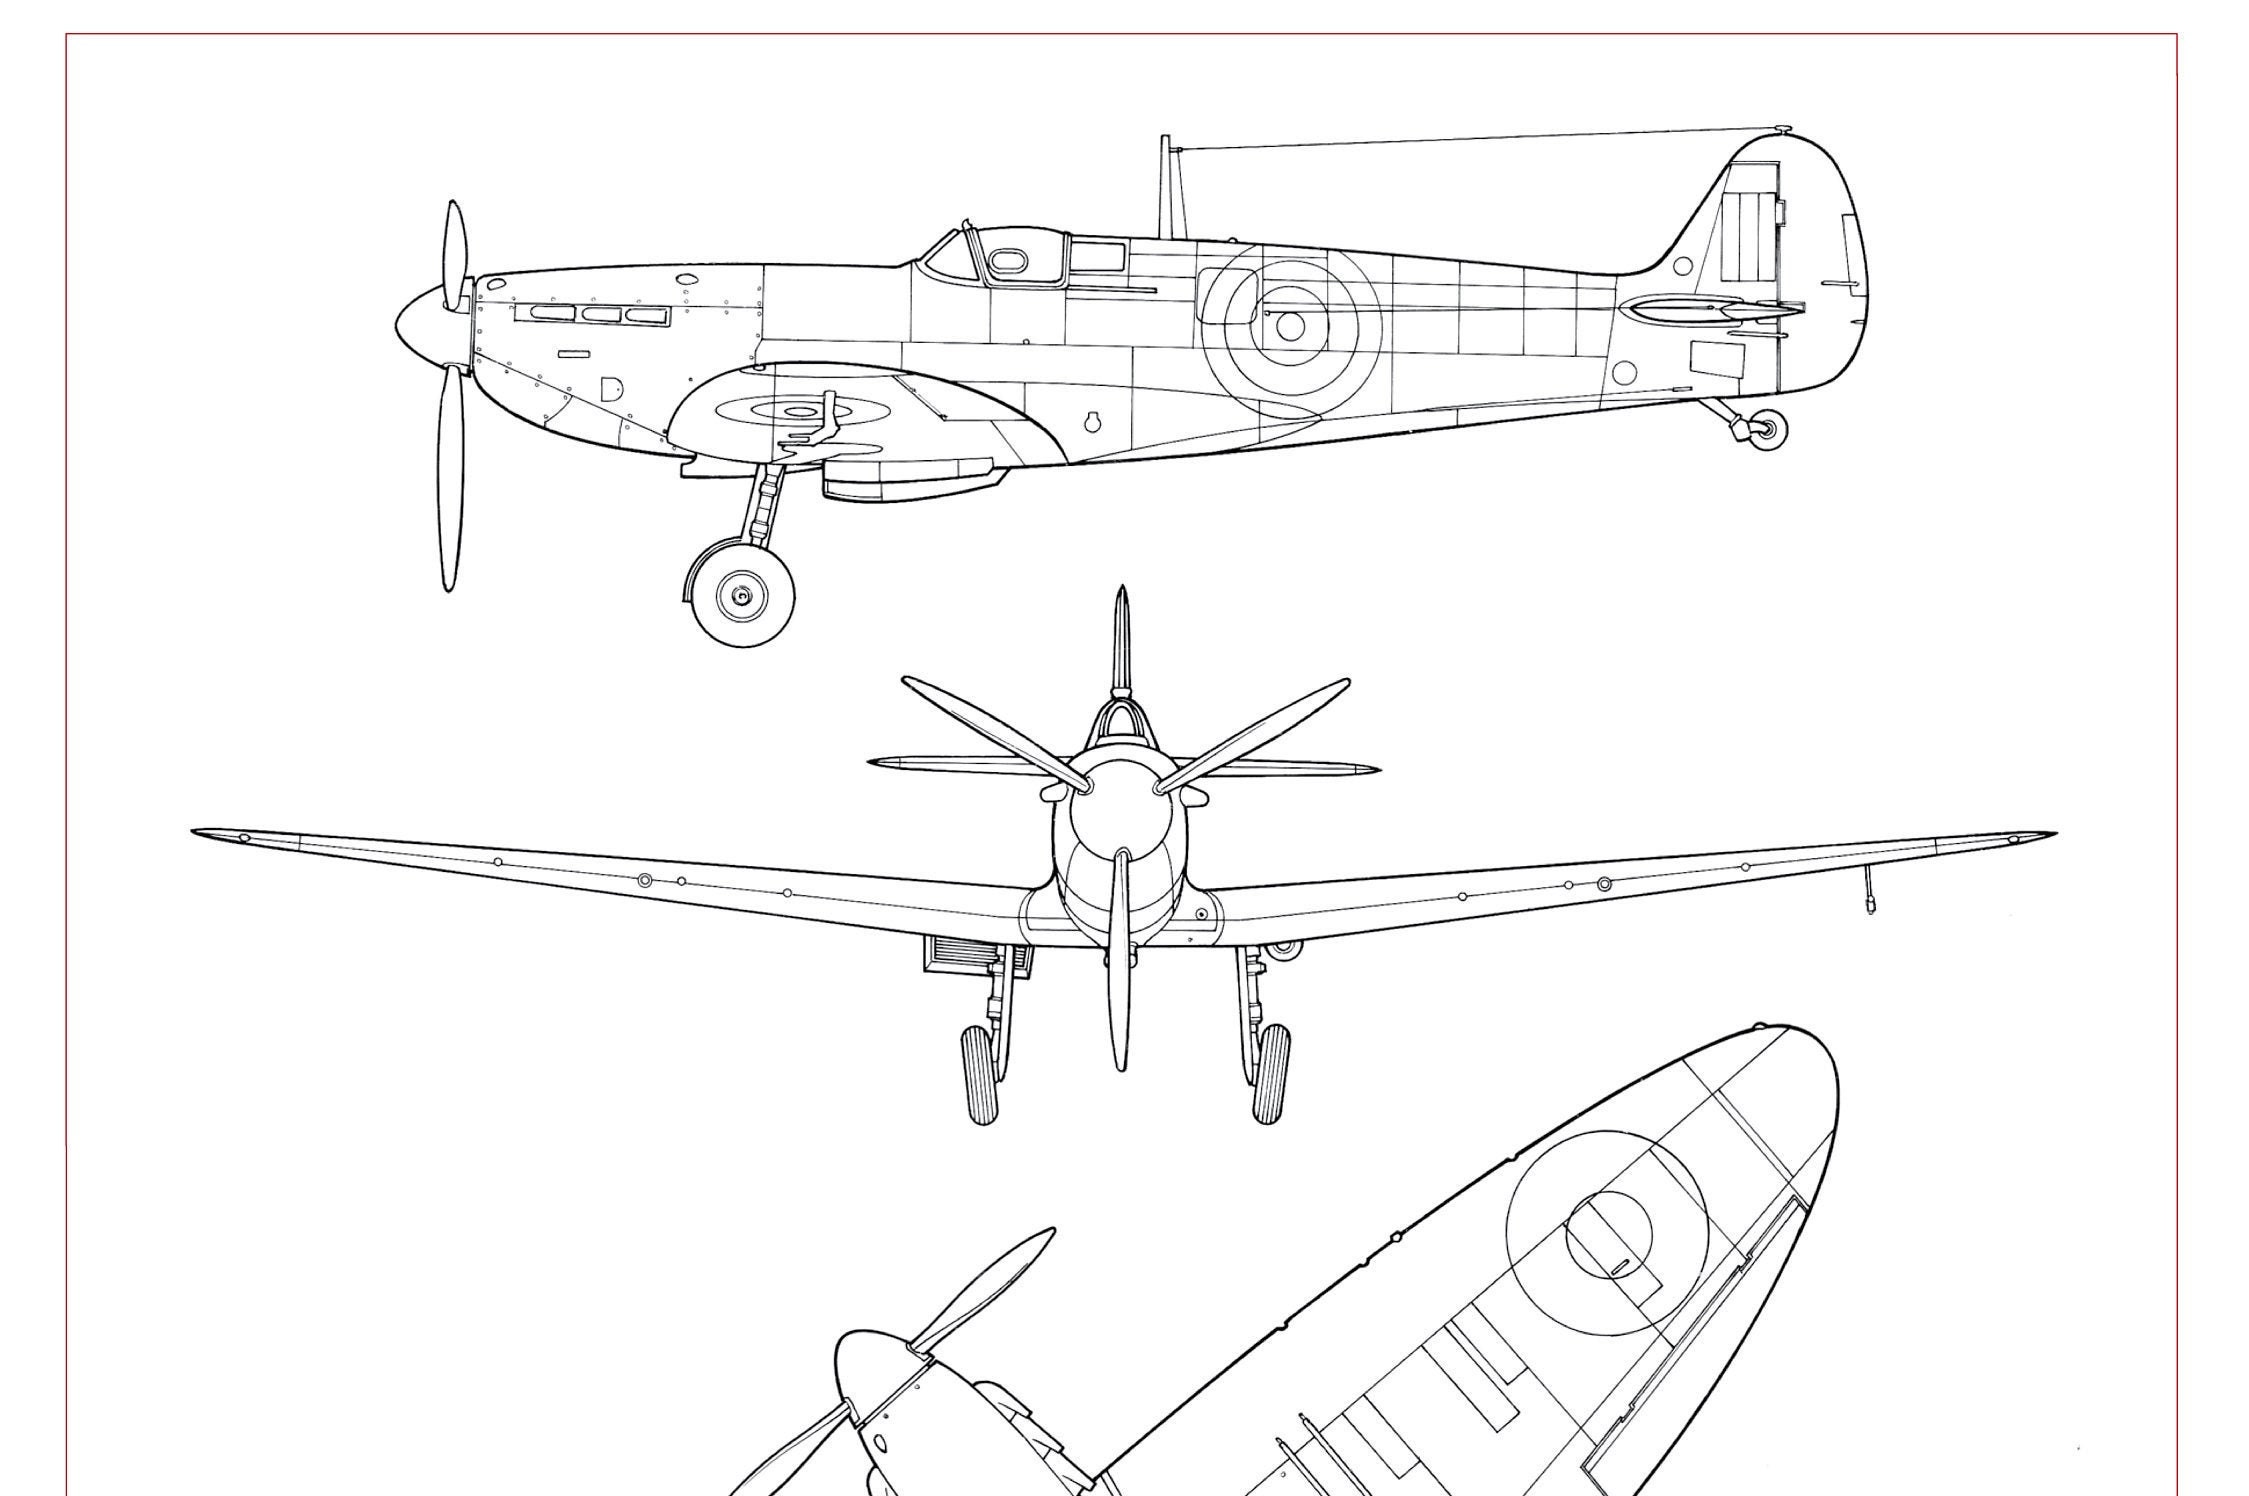 ManzaEN - Spitfire sketches